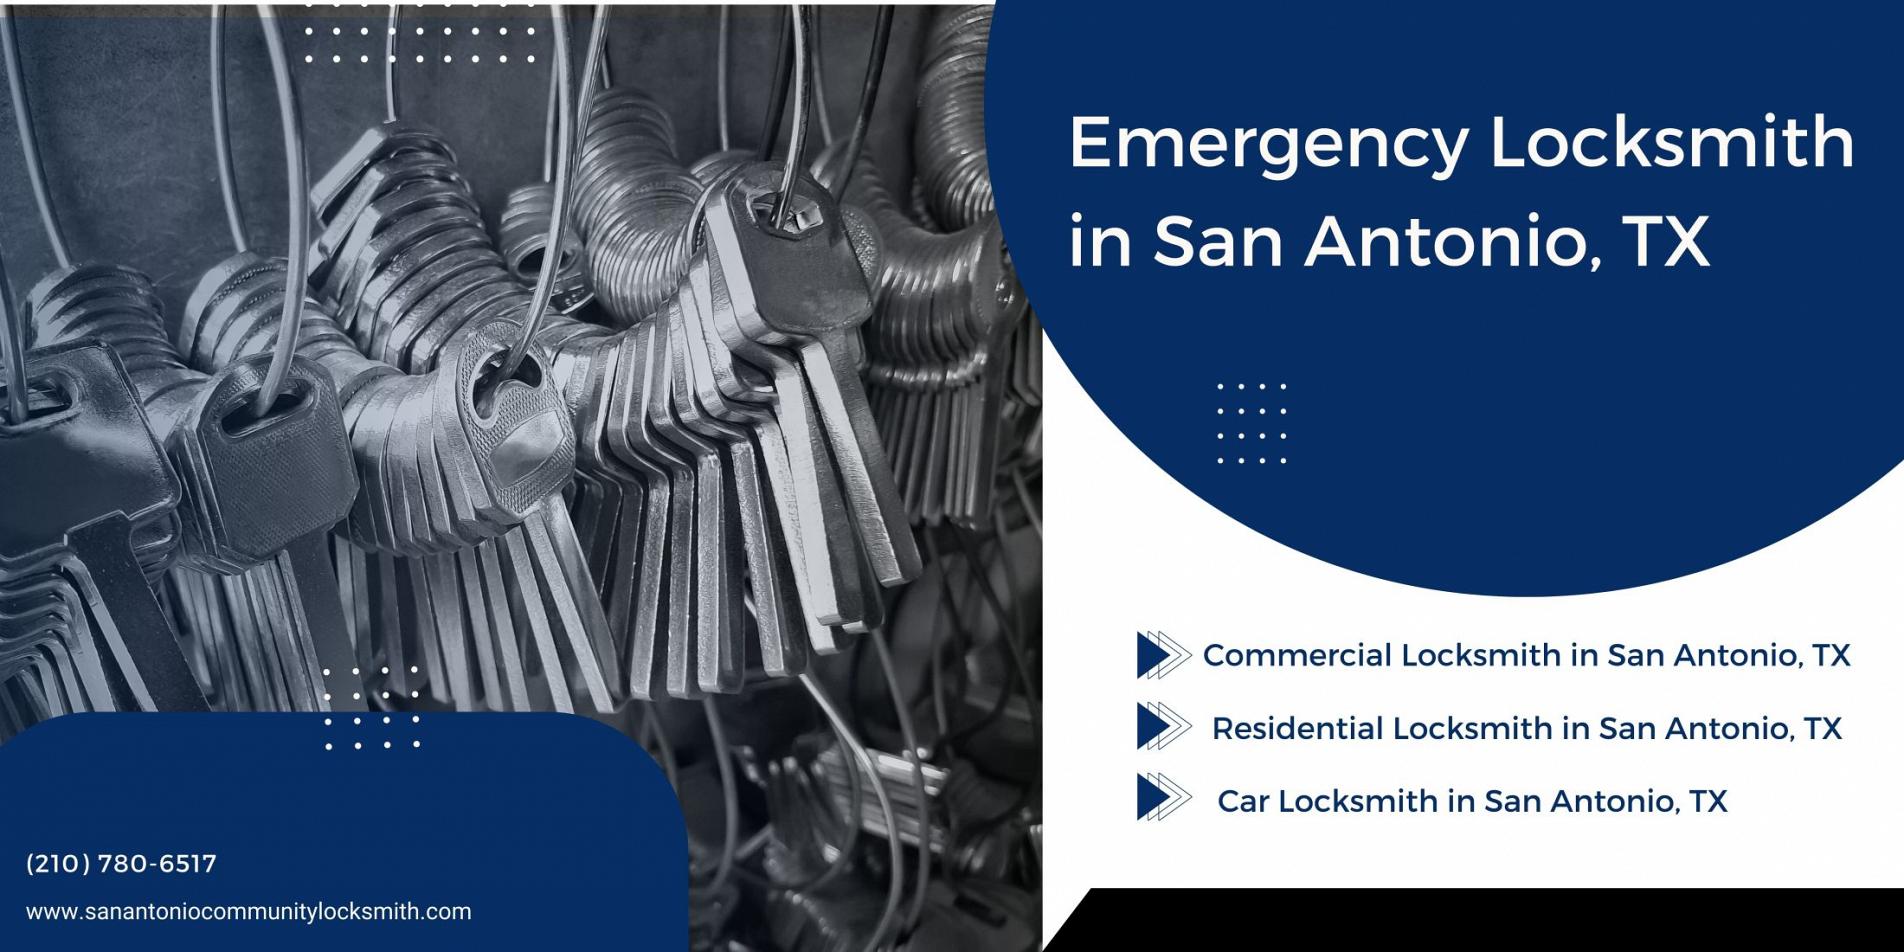 San Antonio Community Locksmith San Antonio, TX 210-780-6517